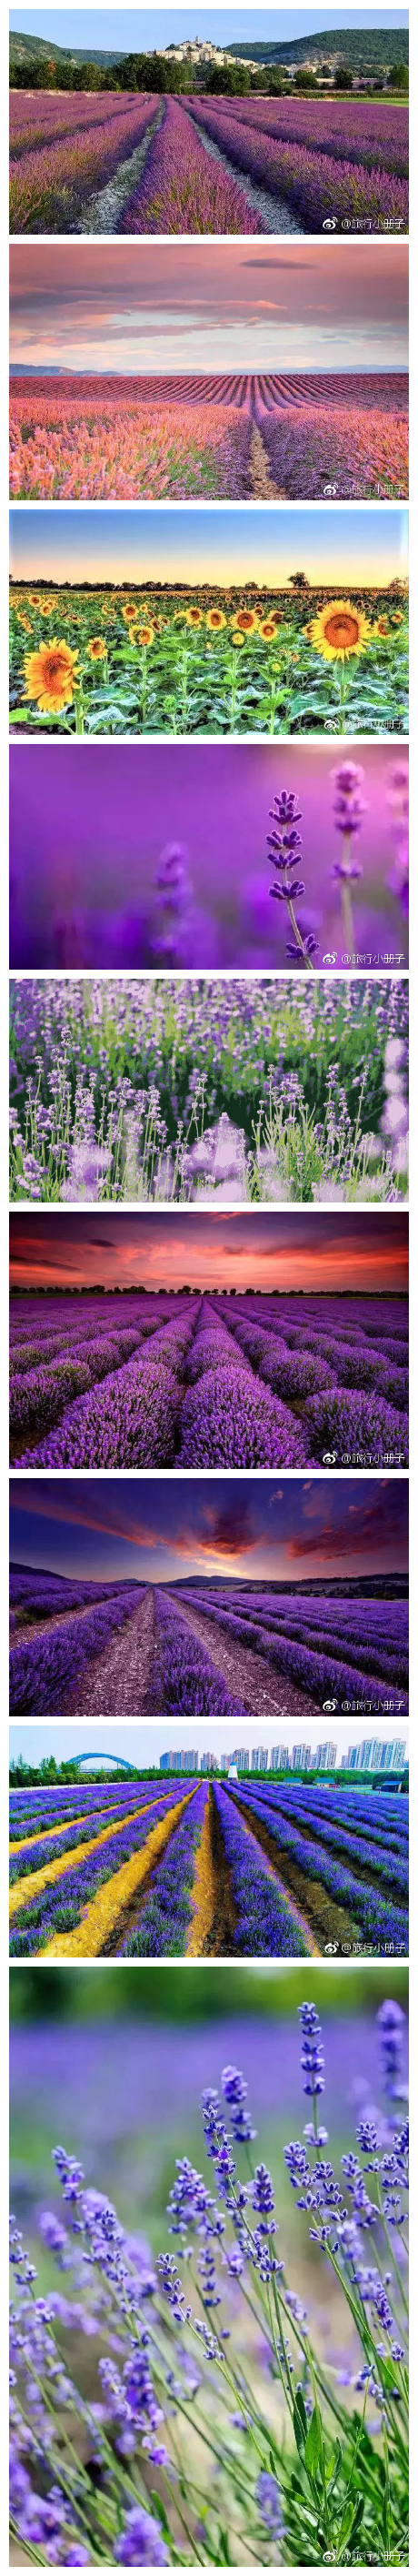 【苏州旅游攻略】苏州阳澄湖半岛也有个“普罗旺斯”一望无际又层层叠叠的紫色，让人沉浸花海浪漫，期待梦幻爱情。 #带着微博去旅行##苏州旅游# ​